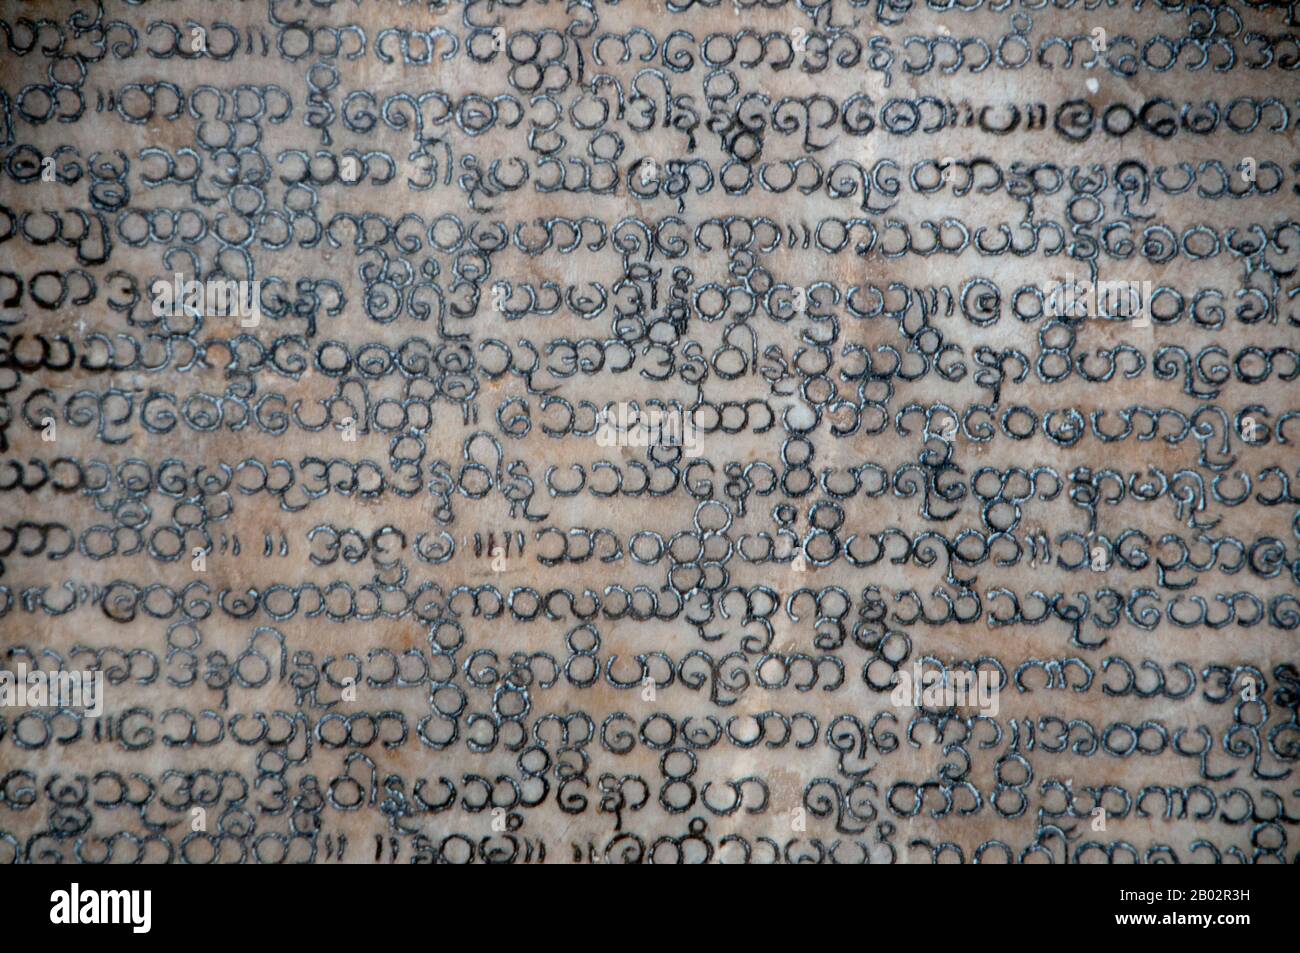 Der gesamte Tipitaka-Pali-Kanon des Theravada-Buddhismus ist auf 729 Marmorplatten mit jeweils 80 bis 100 Textzeilen, die ursprünglich in Goldfarbe waren, sowohl auf der obversen als auch auf der Rückseite angebracht. Jeder Stein ist dreieinhalb Meter breit, fünf Meter groß und fünf Zentimeter dick und in einem Kyauksa gu oder einem kleinen höhlenartigen Stupa untergebracht. Kuthodaw Pagode, wörtlich übersetzt Königliche Verdienstpagode, und formal Mahalawka Marazein genannt, ist ein buddhistischer Tempel und Stupa in Mandalay, Zentral-Birma. Es liegt am Fuße des Mandalay Hill und wurde während der Herrschaft von König Mindon (15-78) erbaut. Die Stupa selbst, das ist Stockfoto